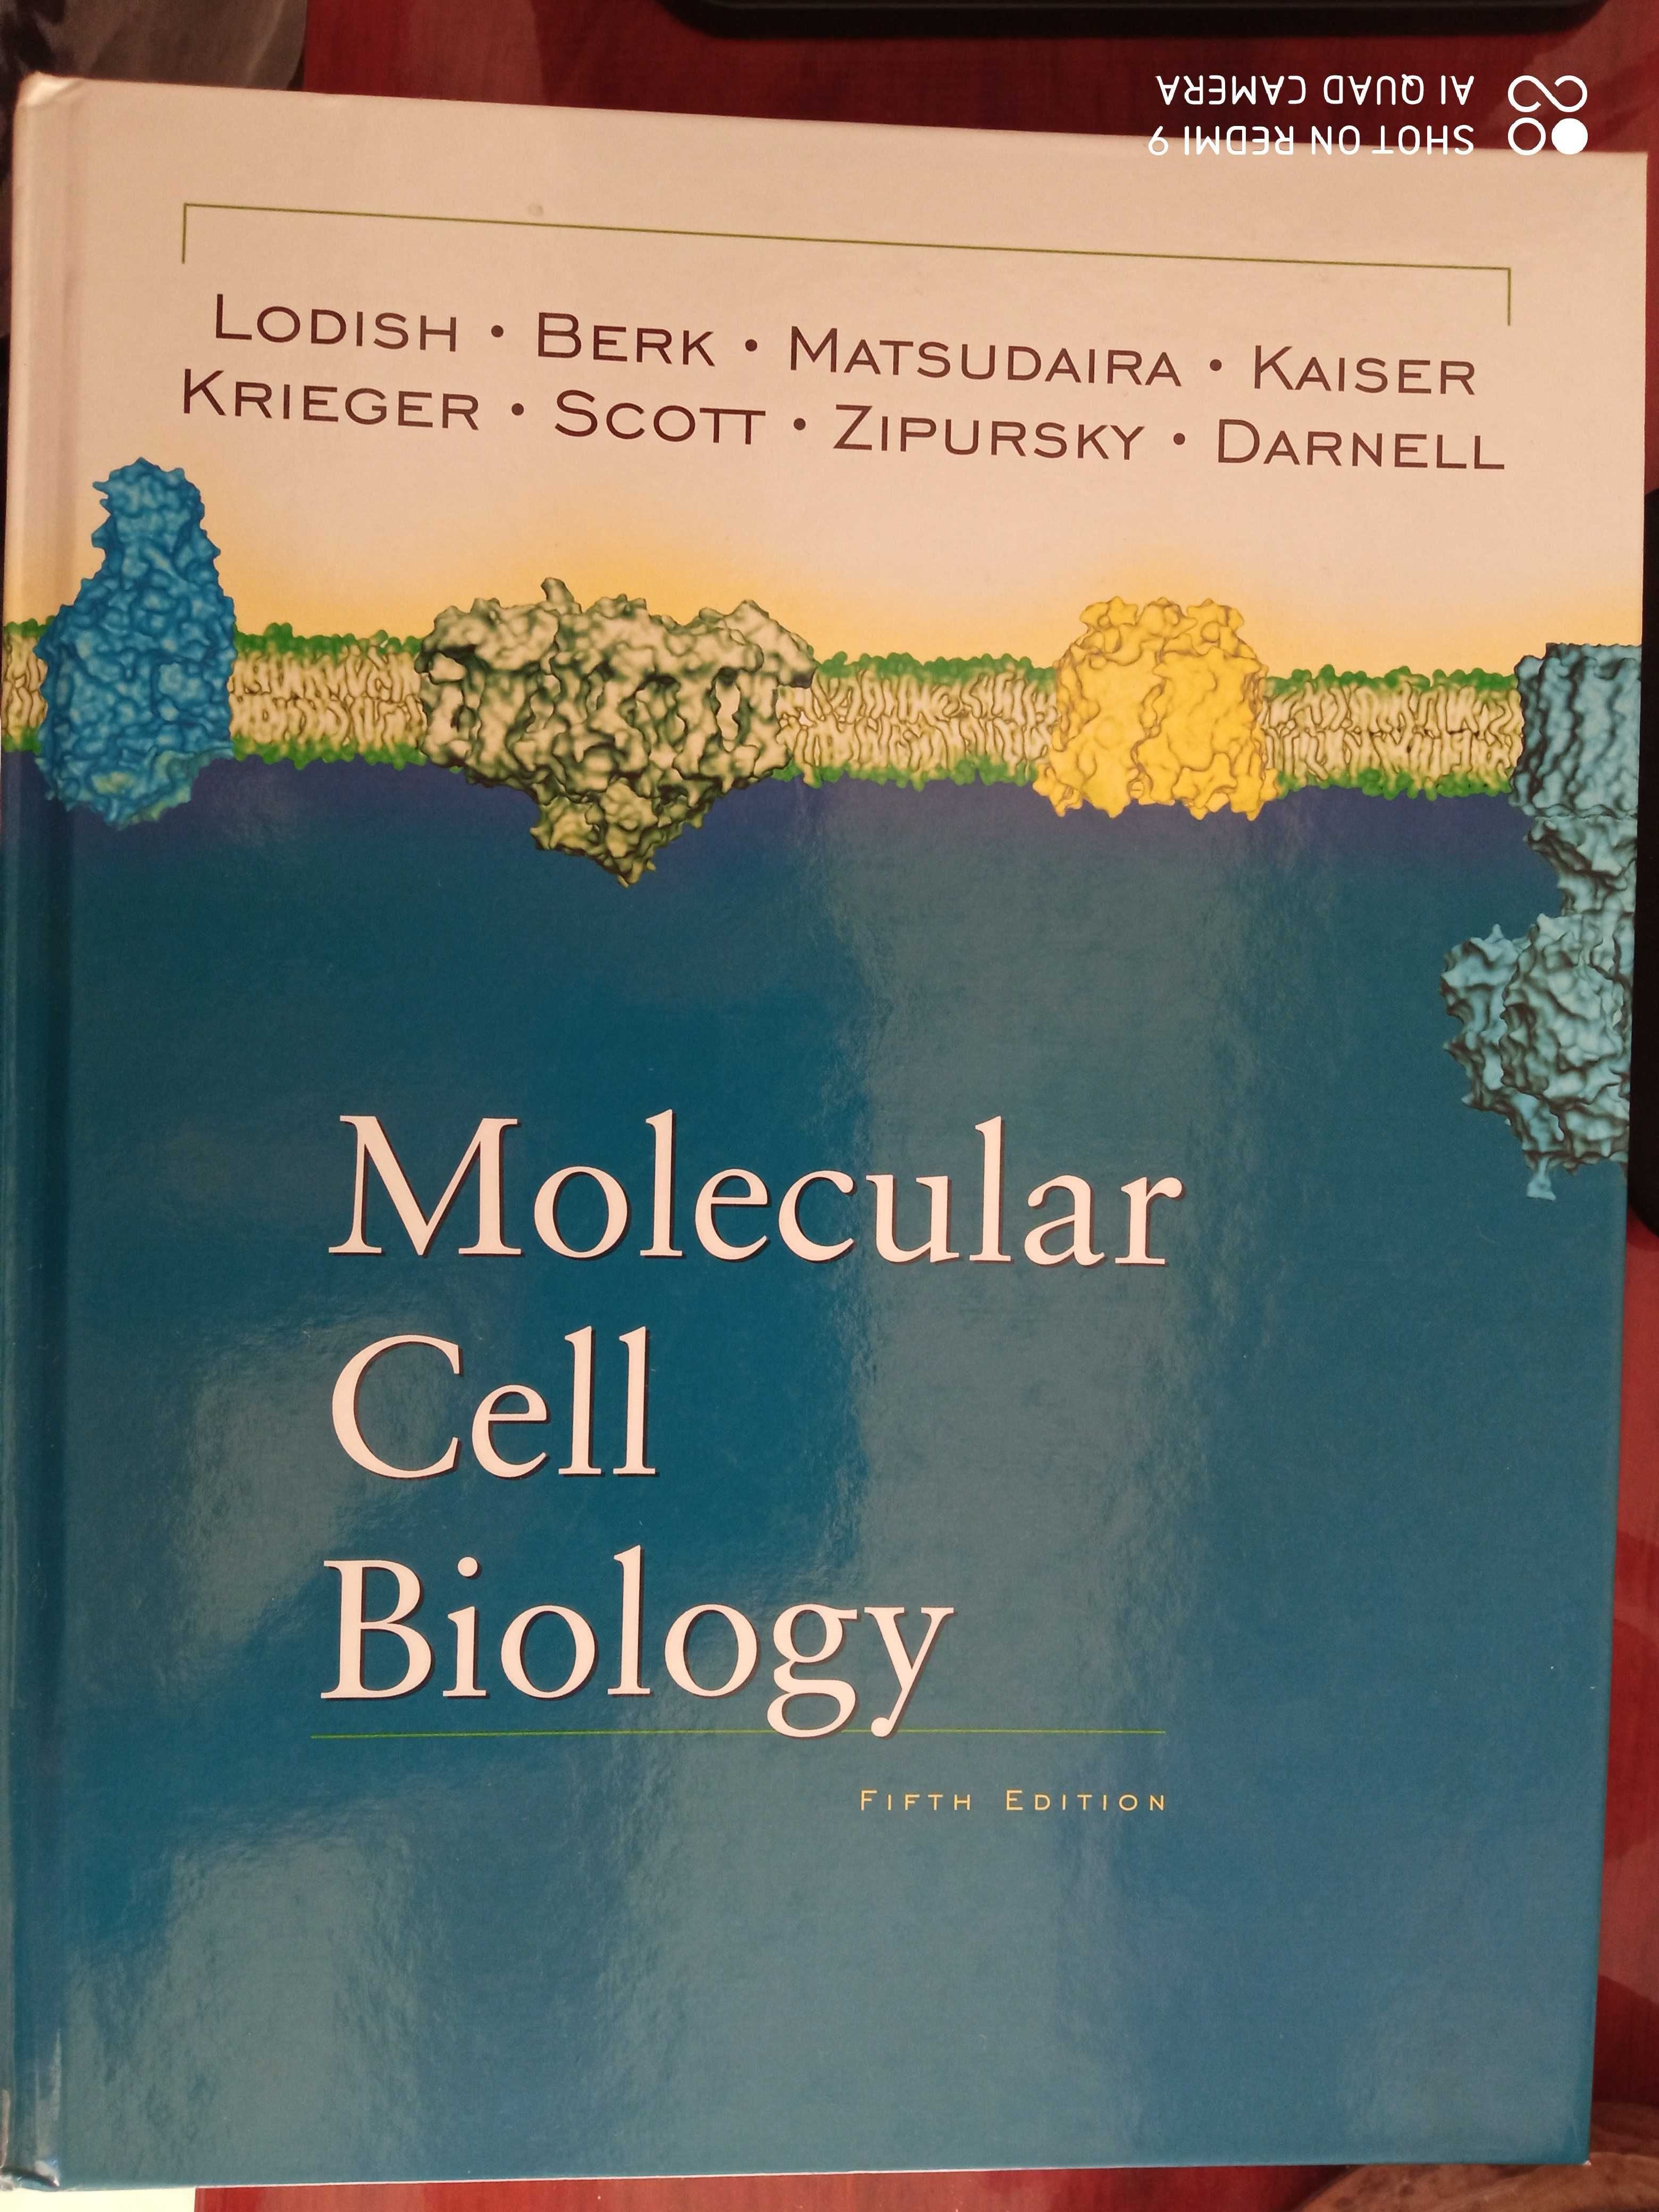 Livro de biologia molecular